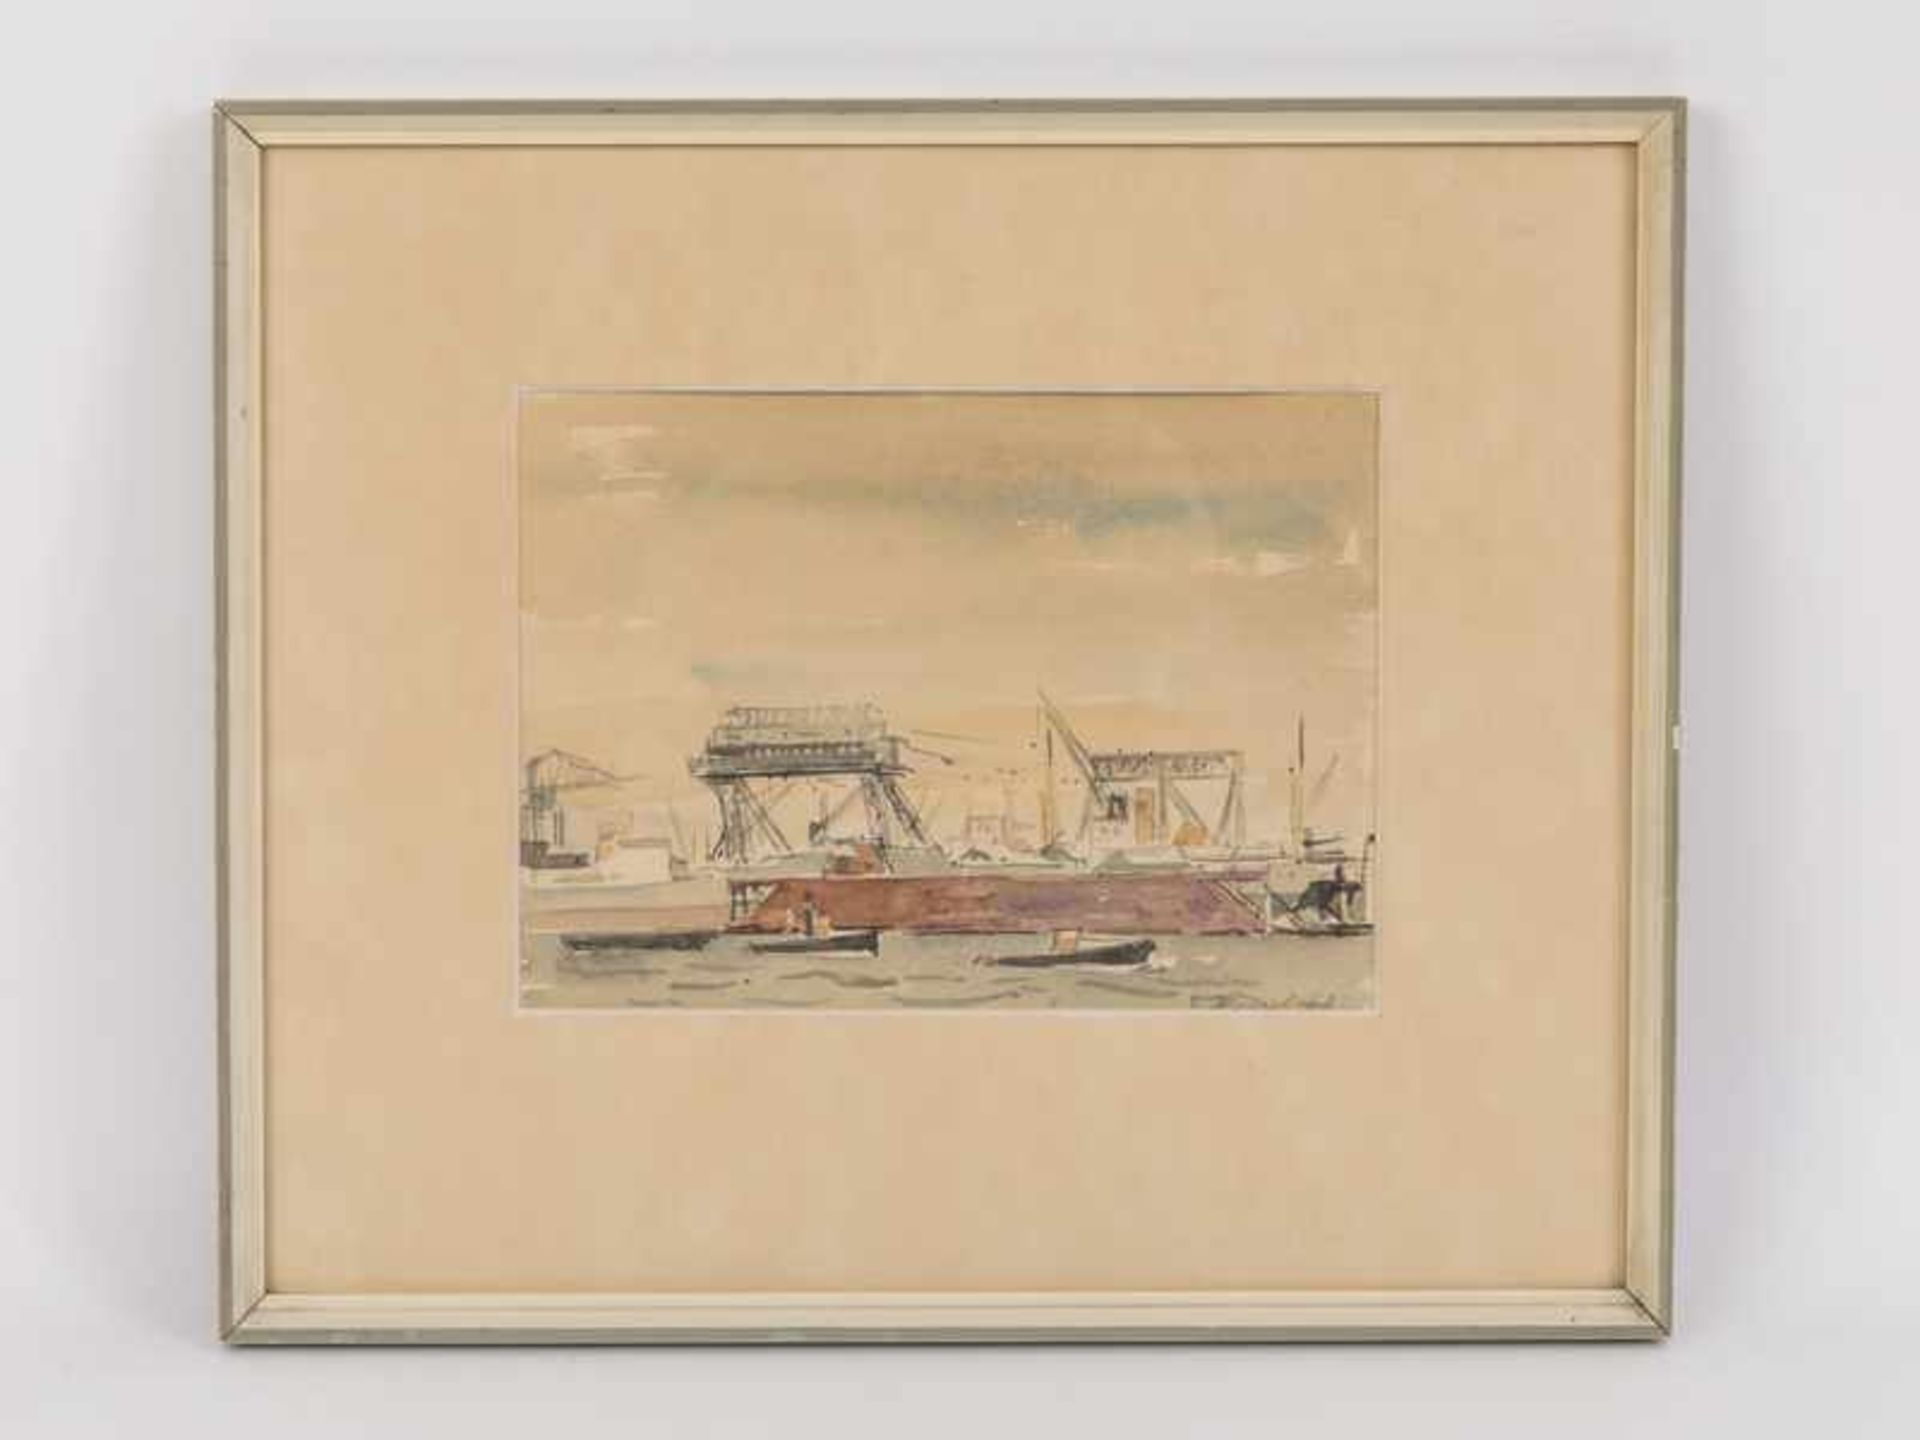 Wessel, Erich (1906 - 1983). Aquarell; "Die Stülkenwerft im Hamburger Hafen", 1960; unten rechts